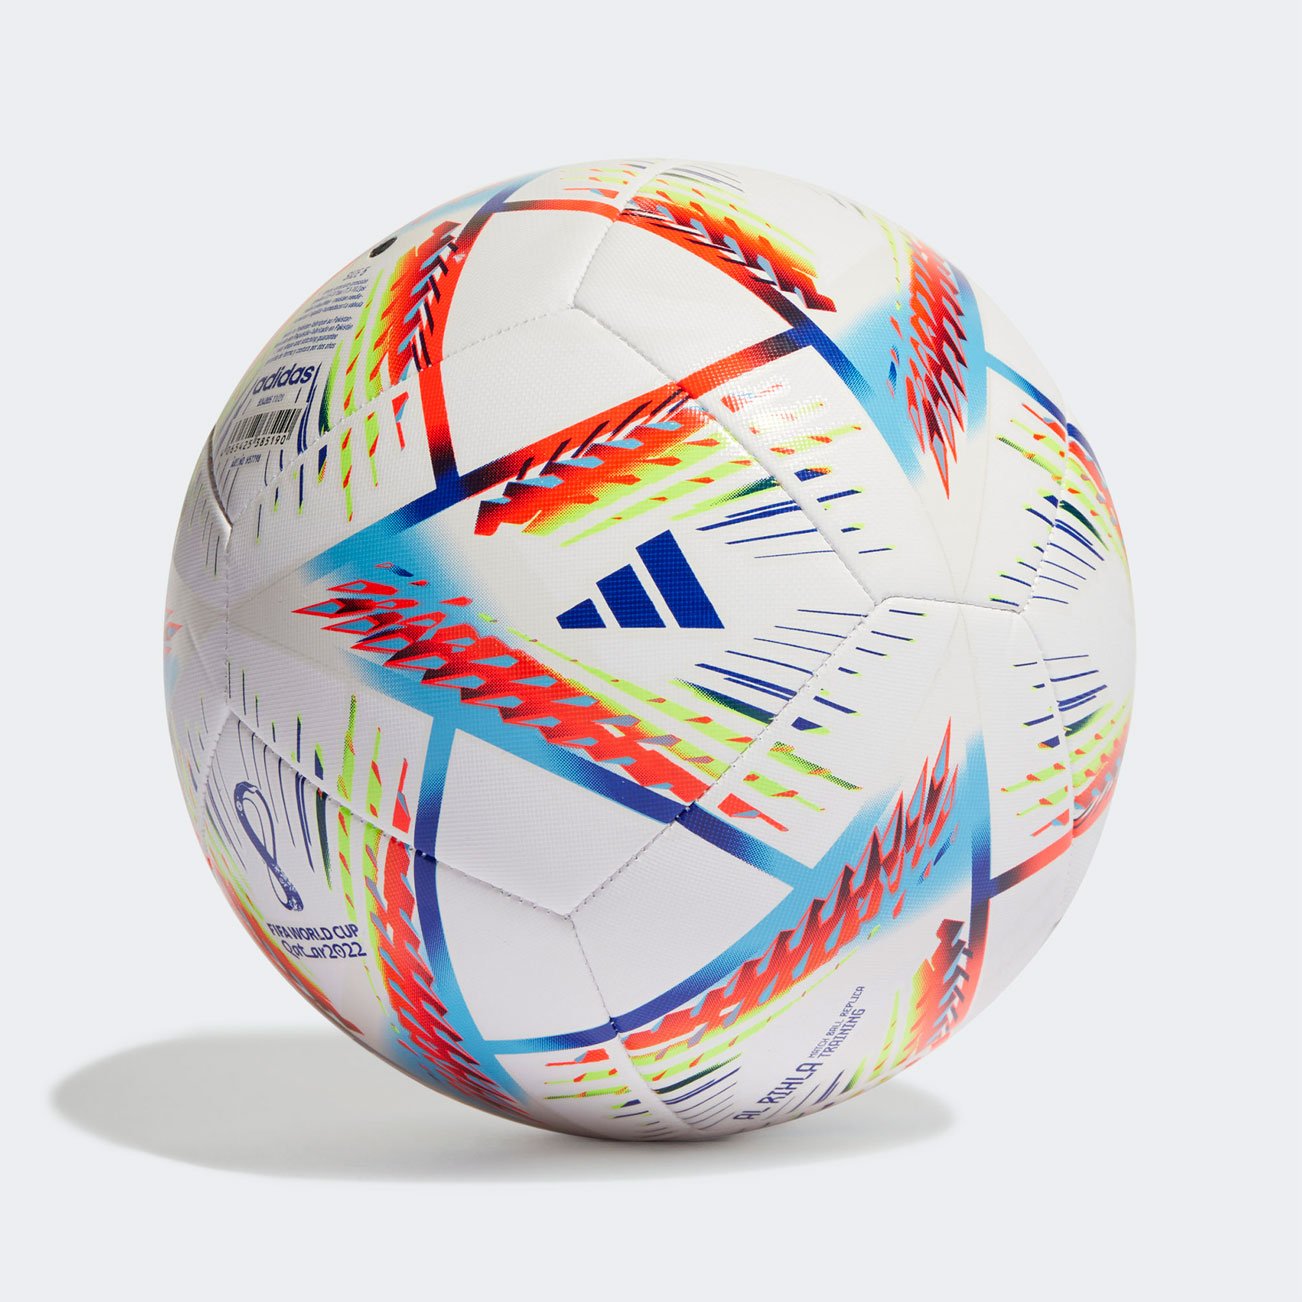 Мяч футбольный adidas Al Rihla Training